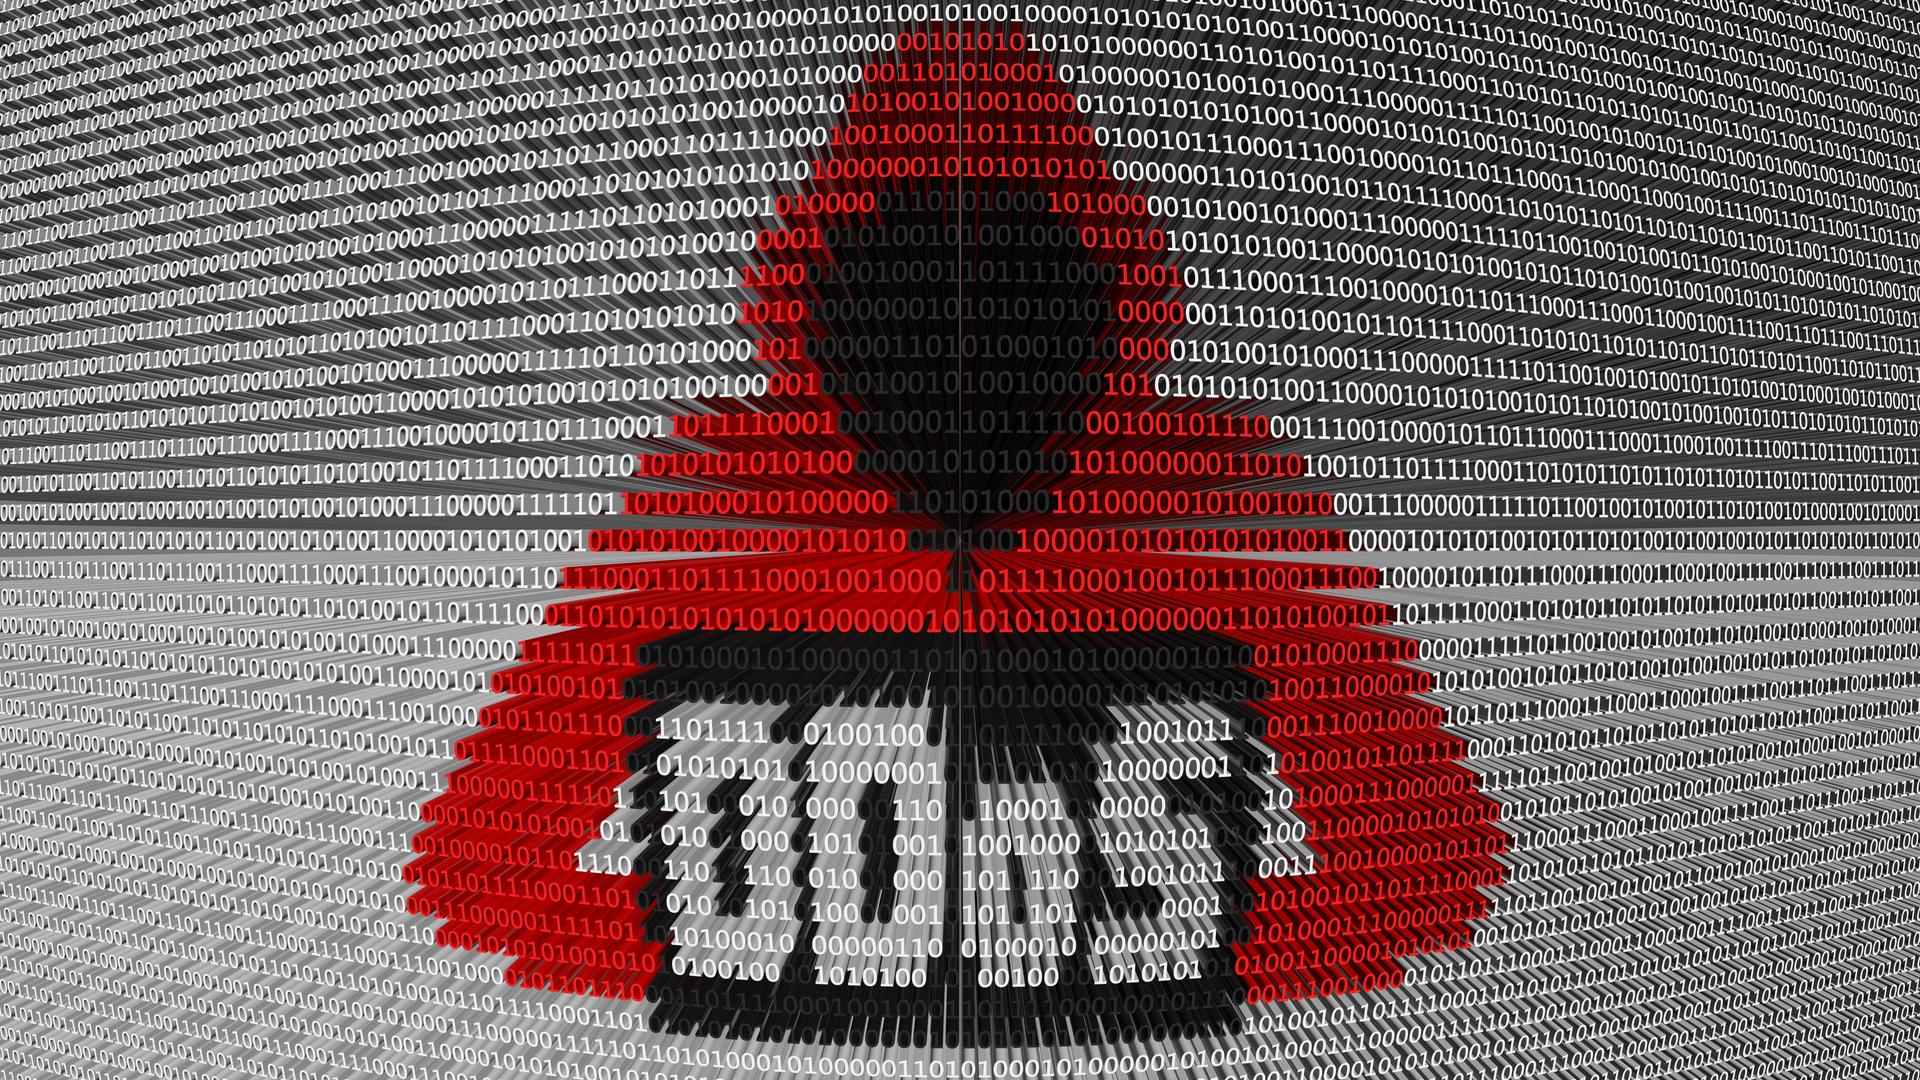 إيقاف هجوم DDoS